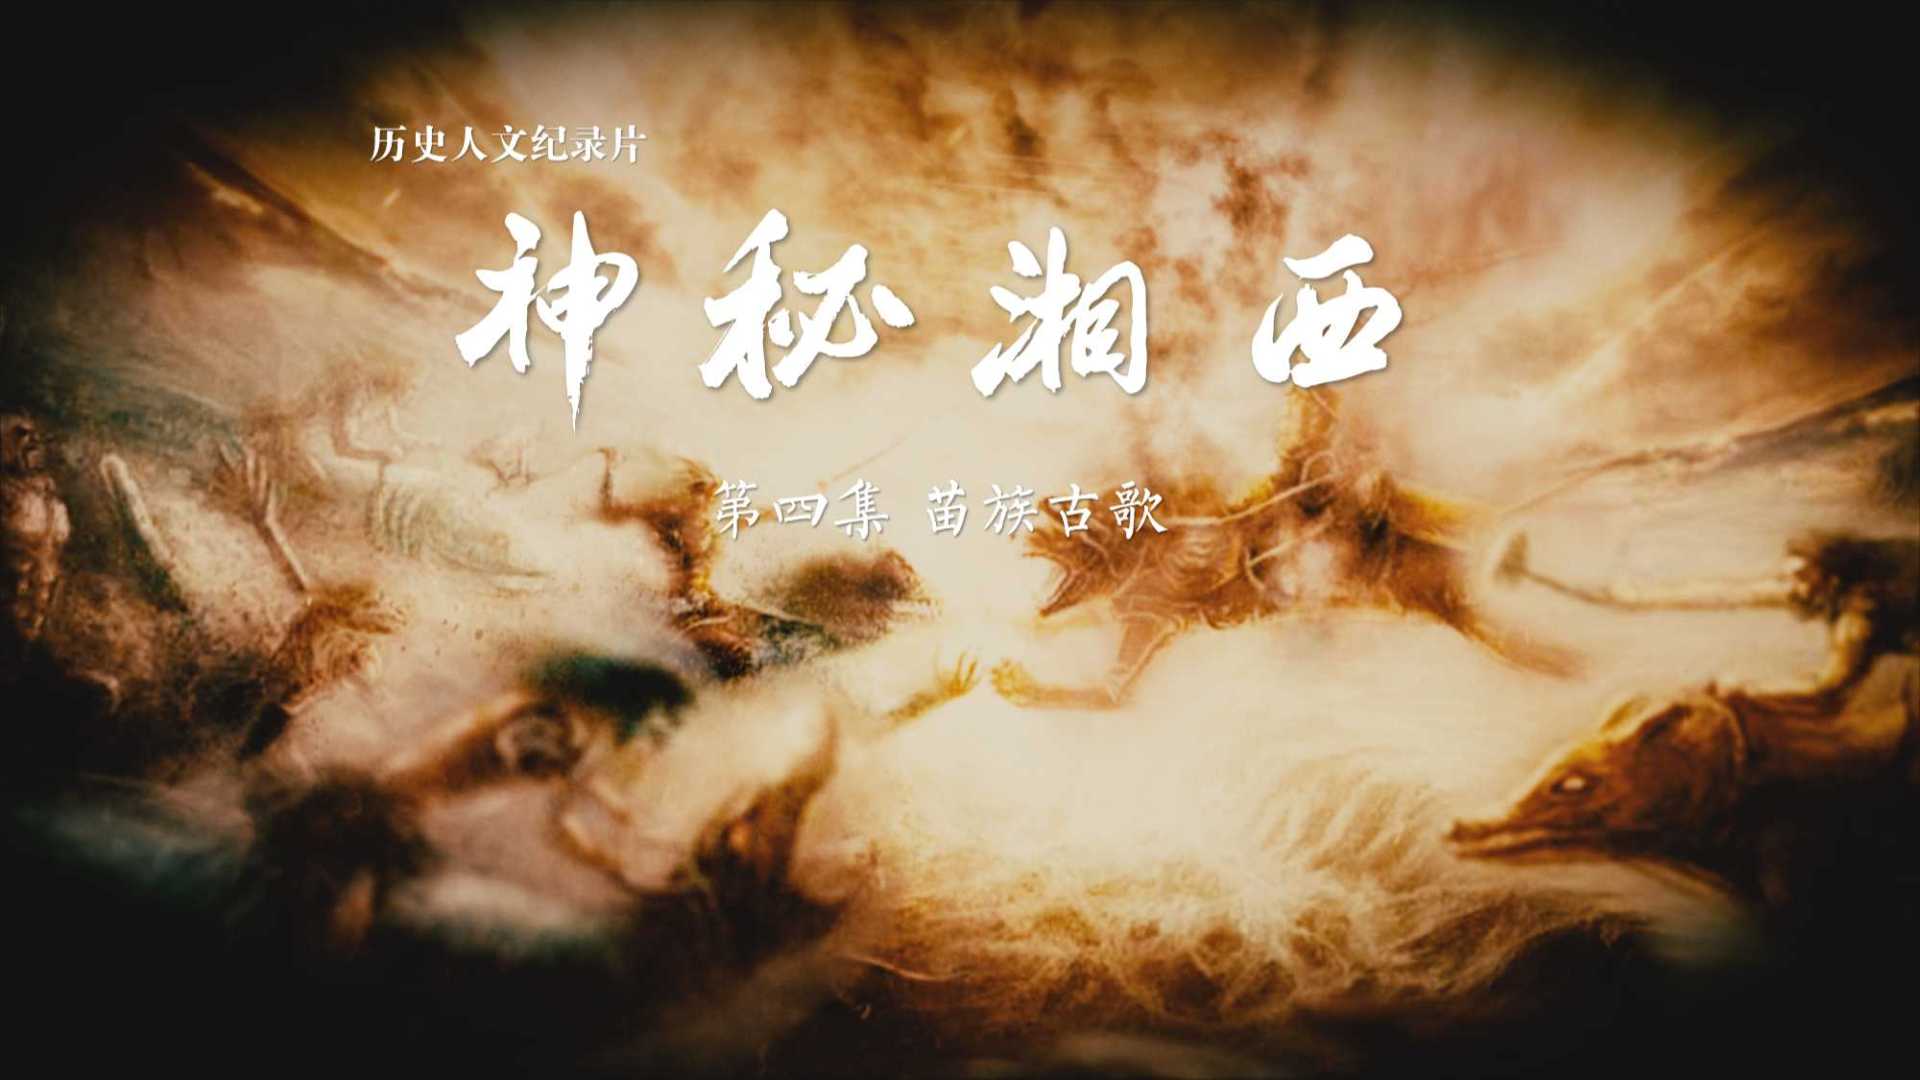 历史人文纪录片《神秘湘西》第四集  苗族古歌